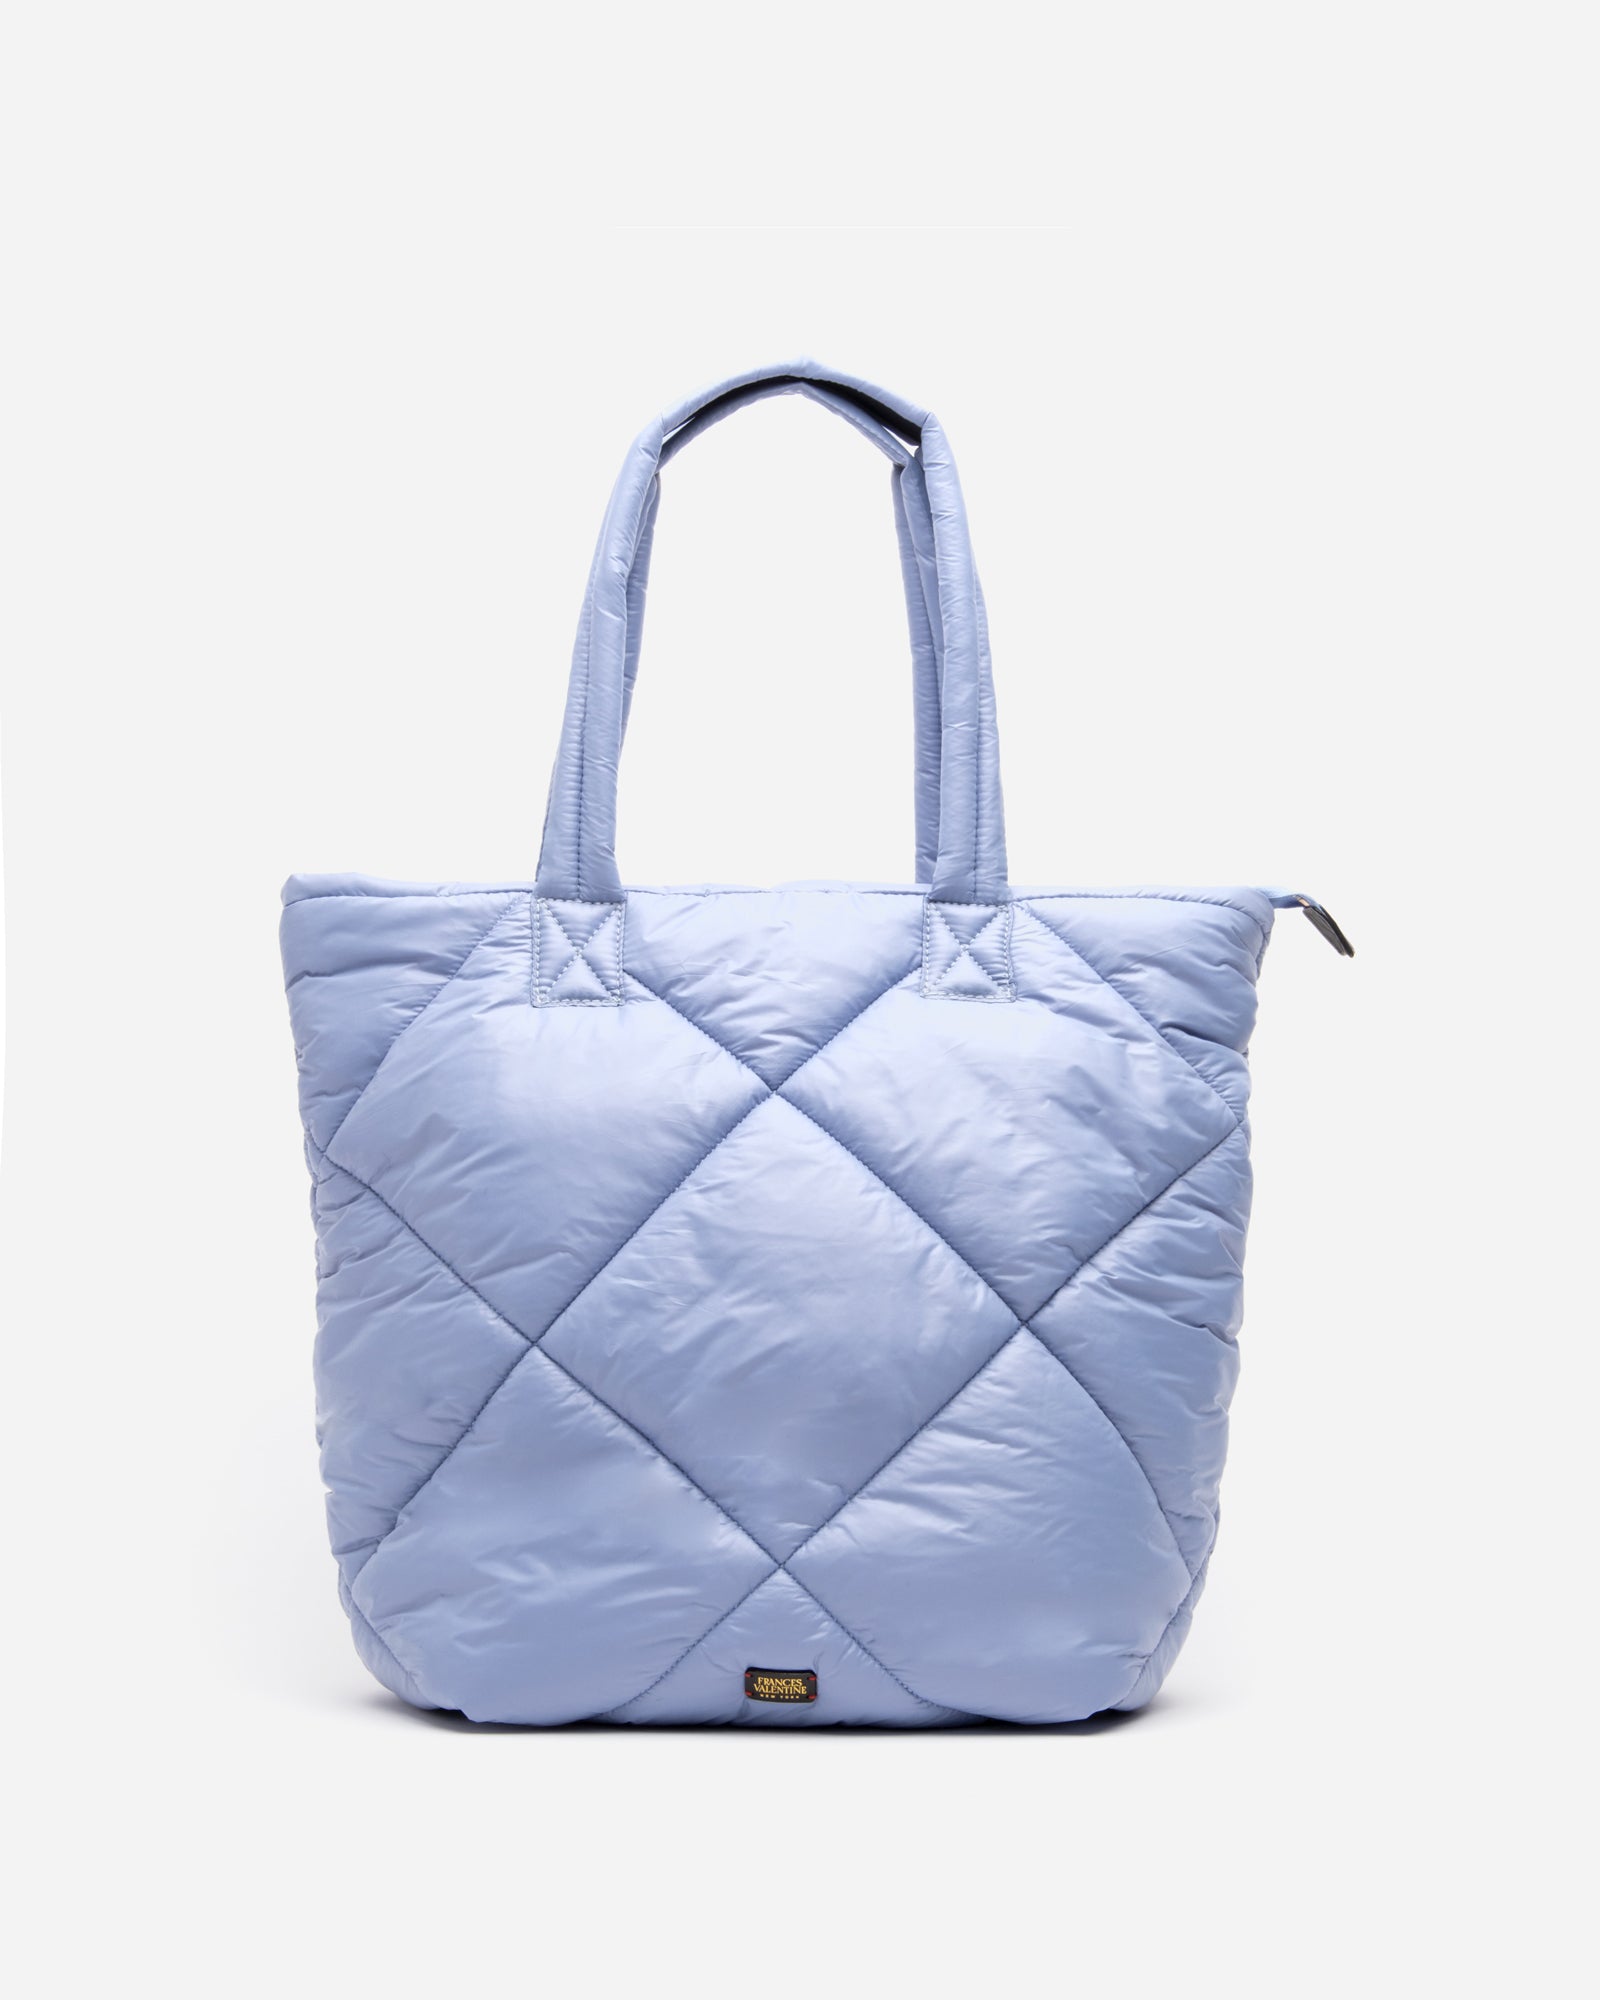 Fashion Quilted Tote Bag For Women, V-shaped Shoulder Bag, Large